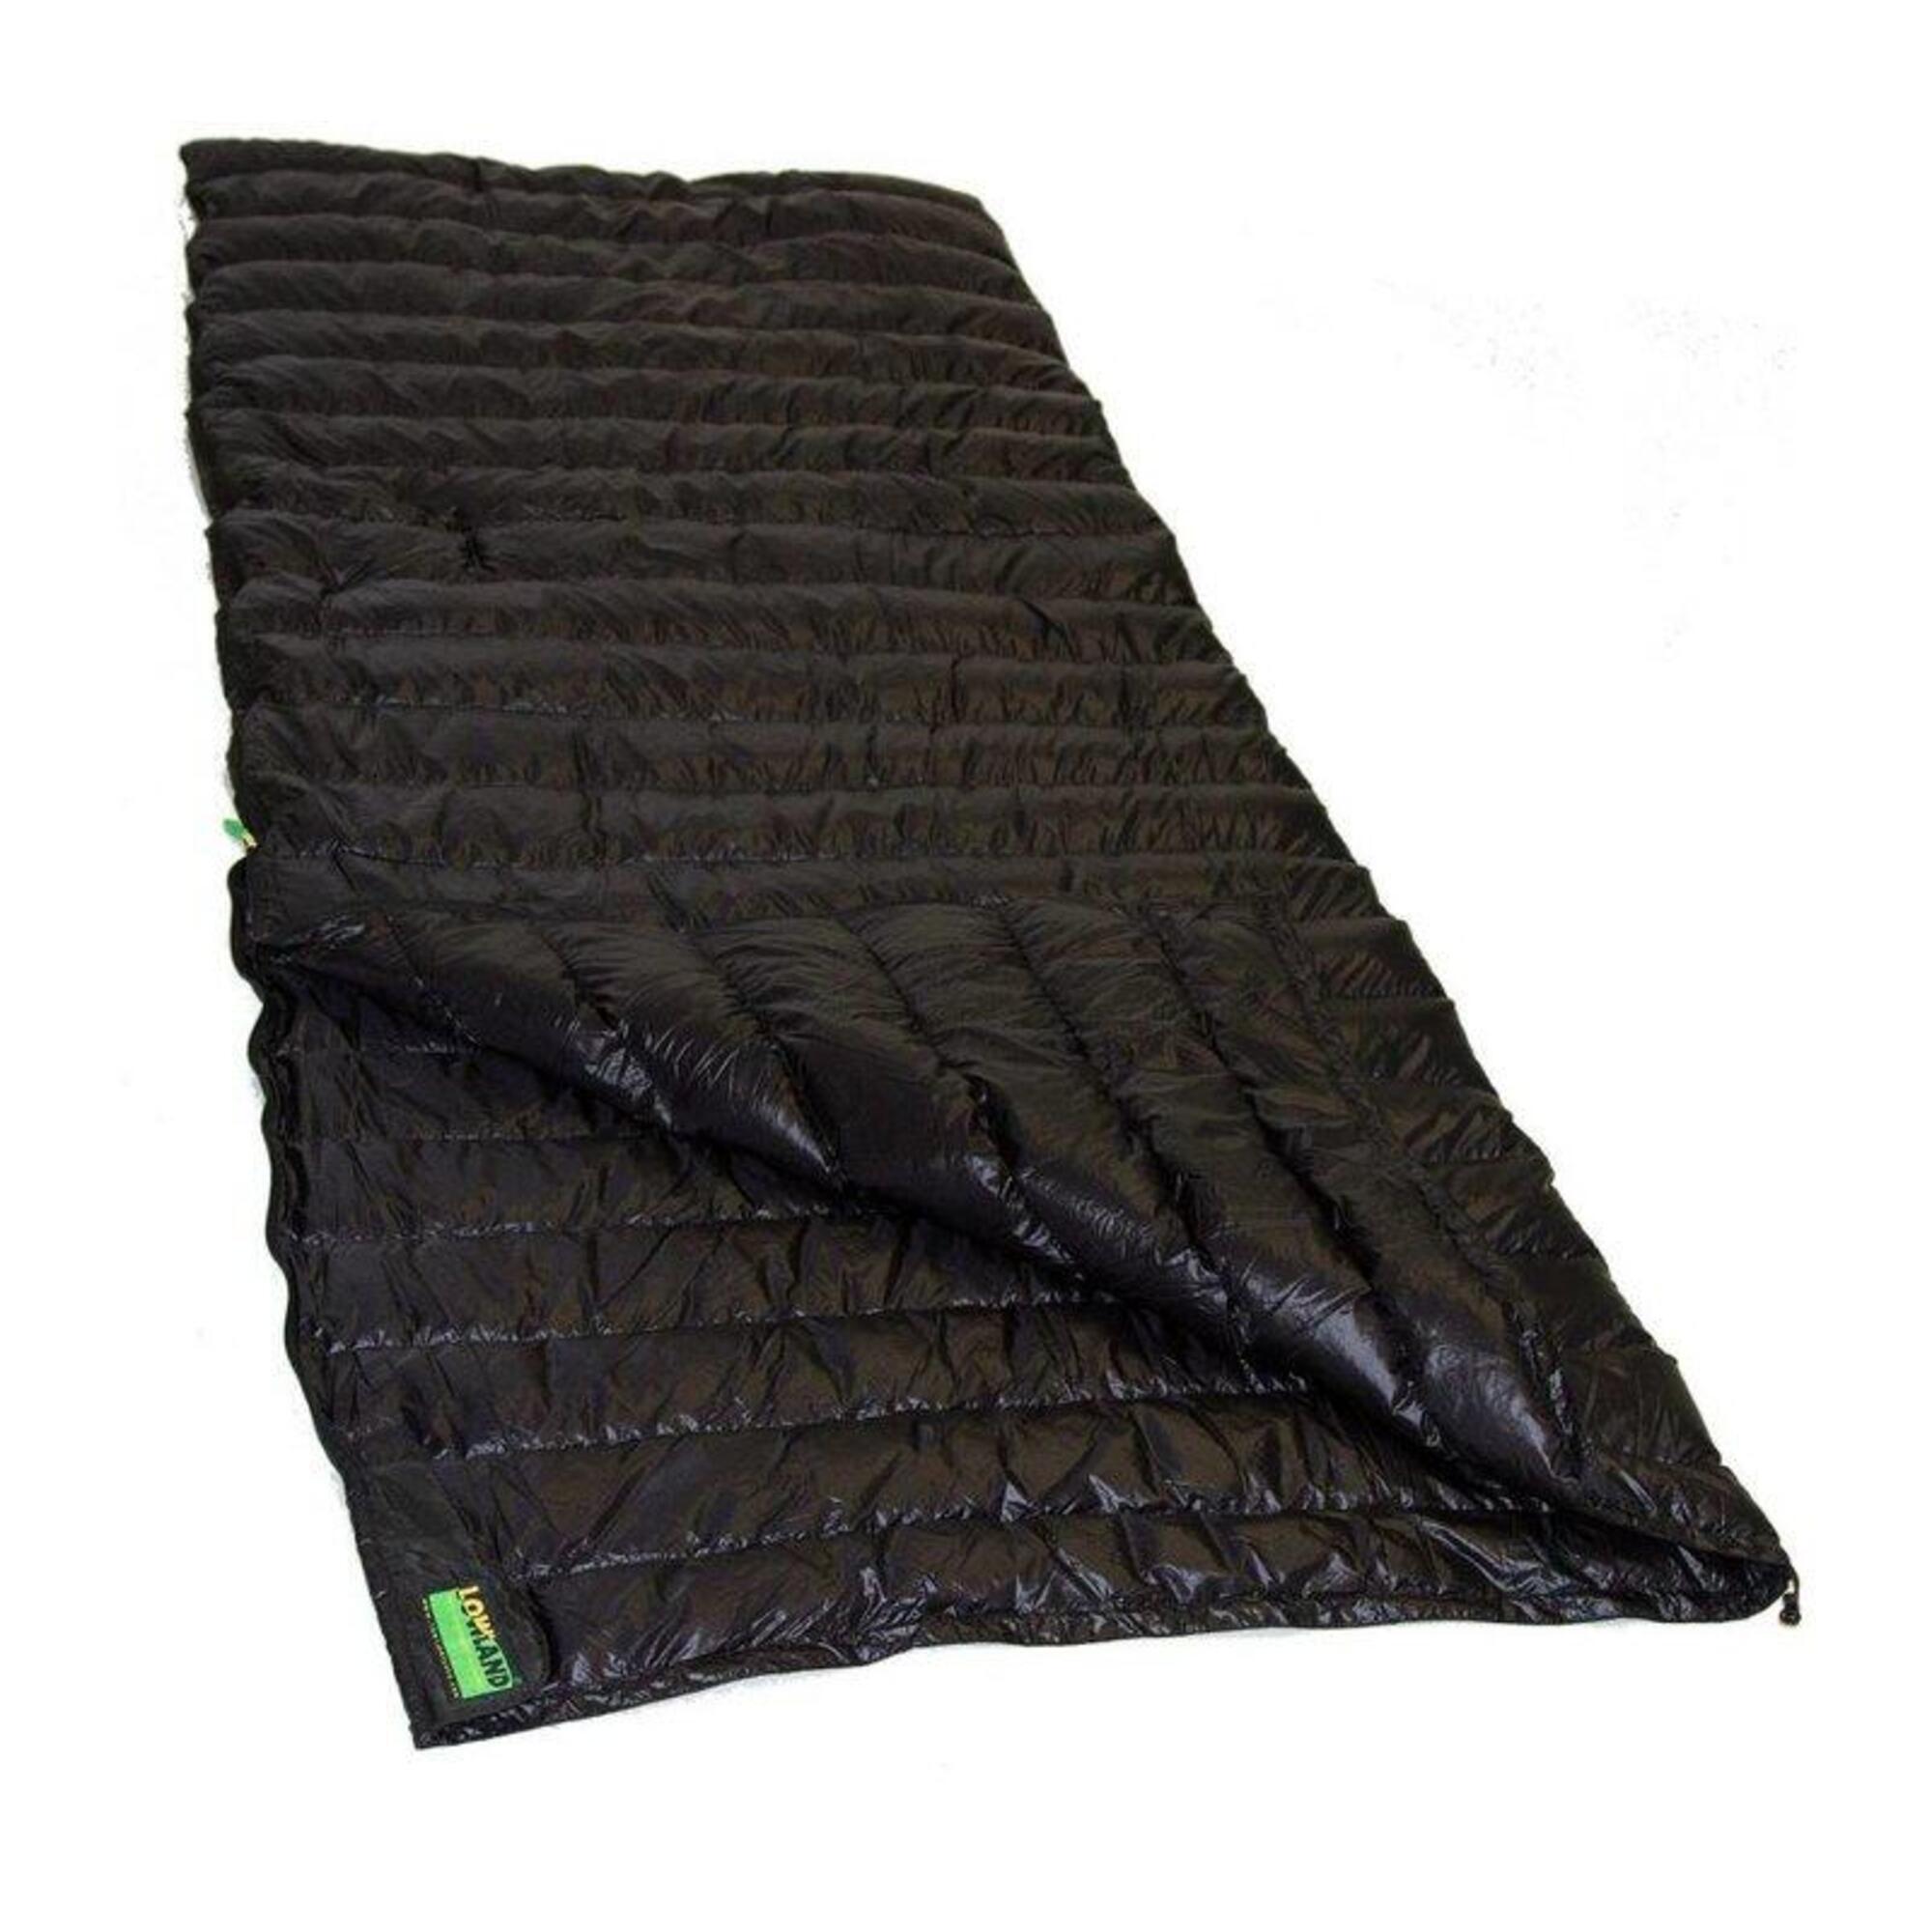 спальный мешок пуховый 190 30 х75см t 5c зеленый pr yjsd 25 g Спальный мешок Lowland пуховый, черный